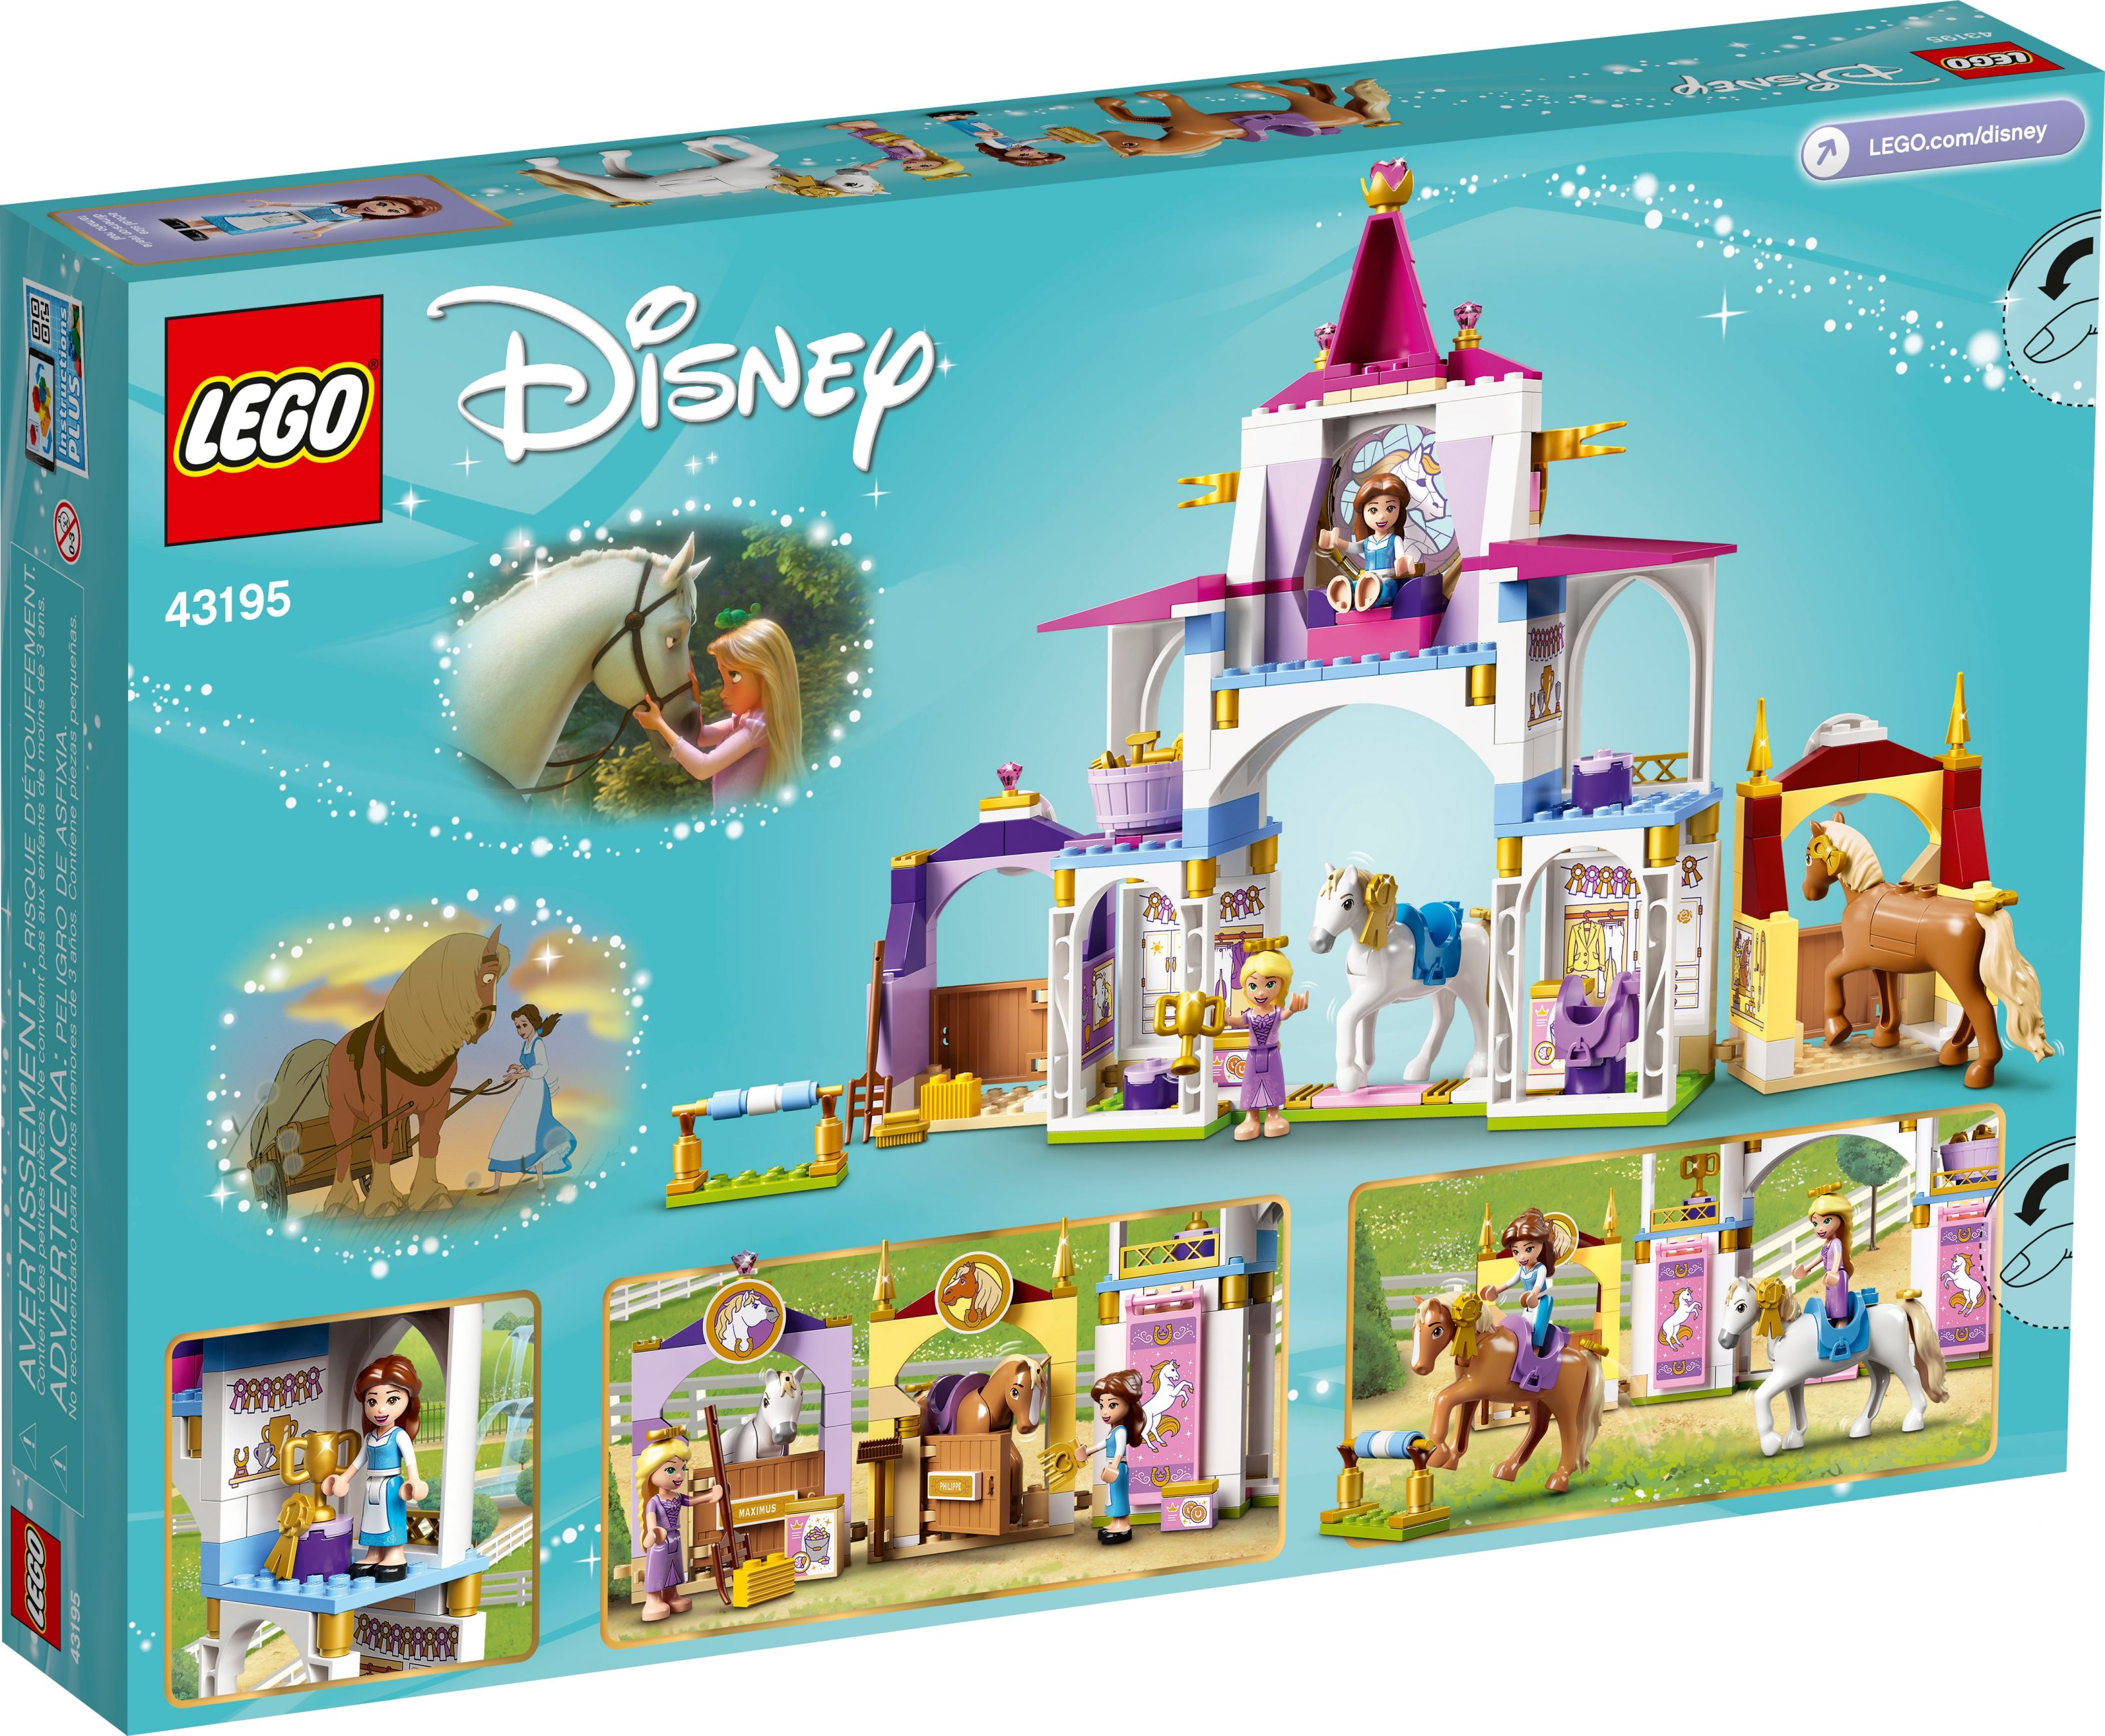 LEGO Disney 43195 Belles und Rapunzels königliche Ställe LEGO_43195_box5_v39.jpg